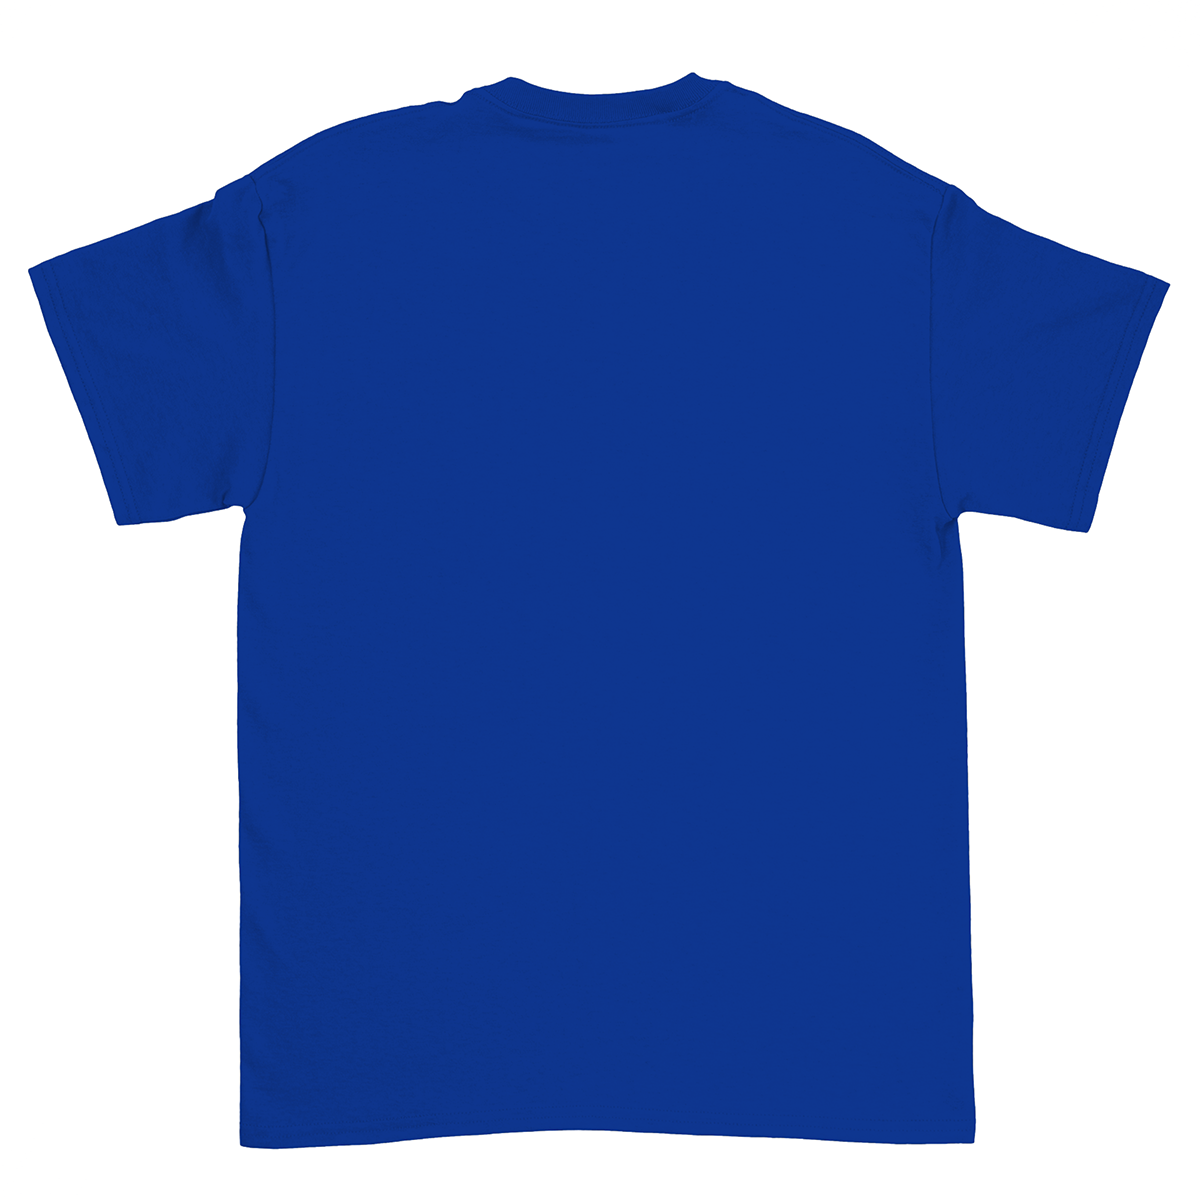 Do Nothing Club Unisex T-Shirt